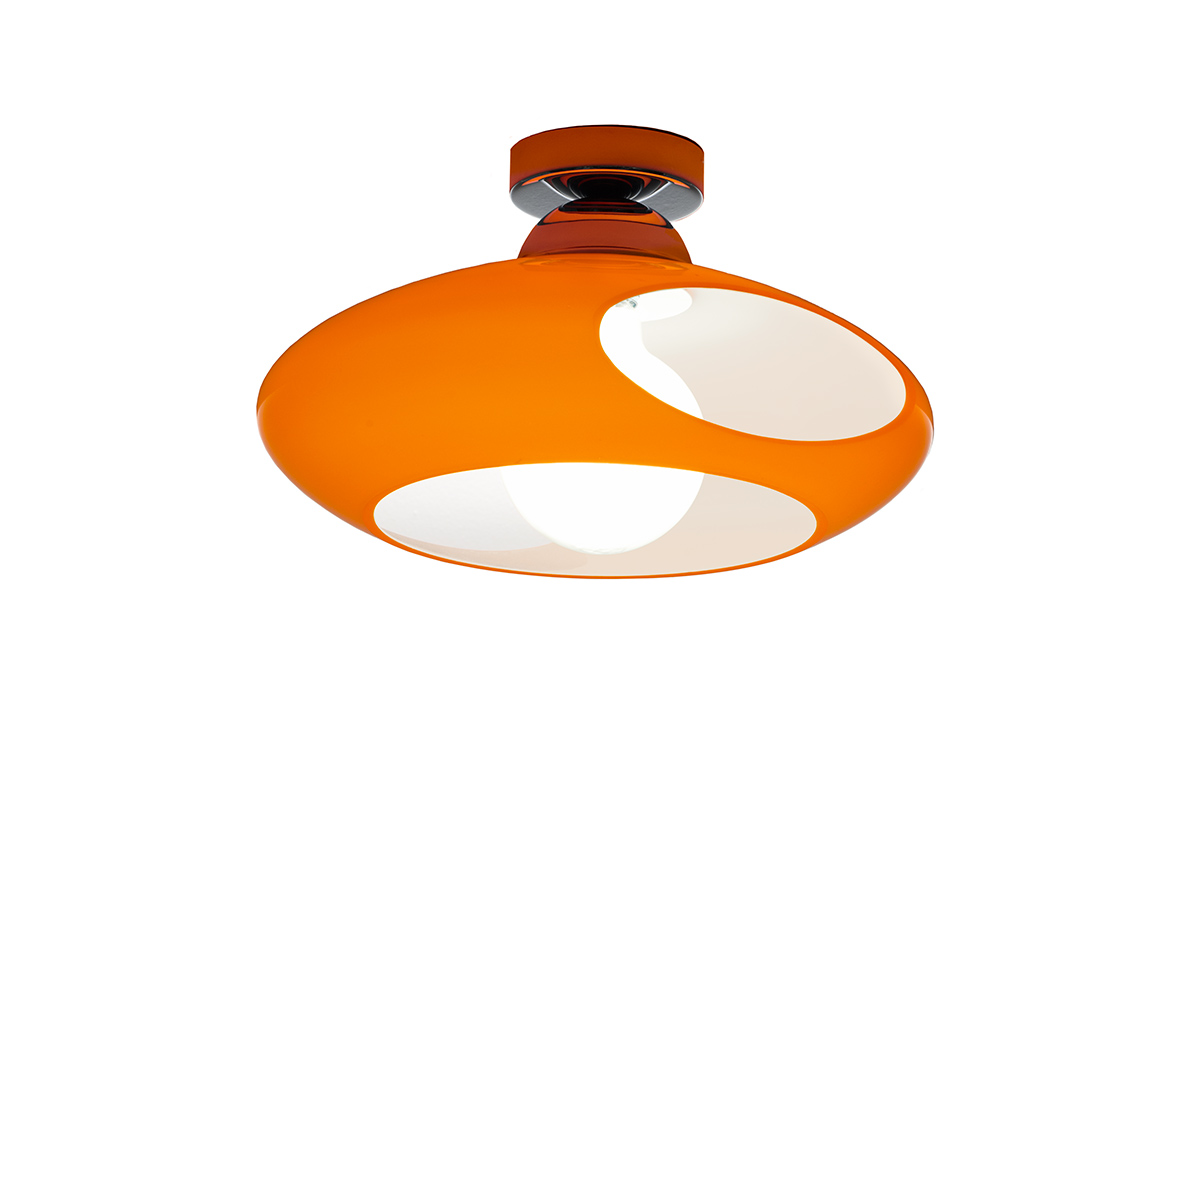 Μοντέρνο φωτιστικό οροφής Μουράνο MARS modern Murano ceiling lamp